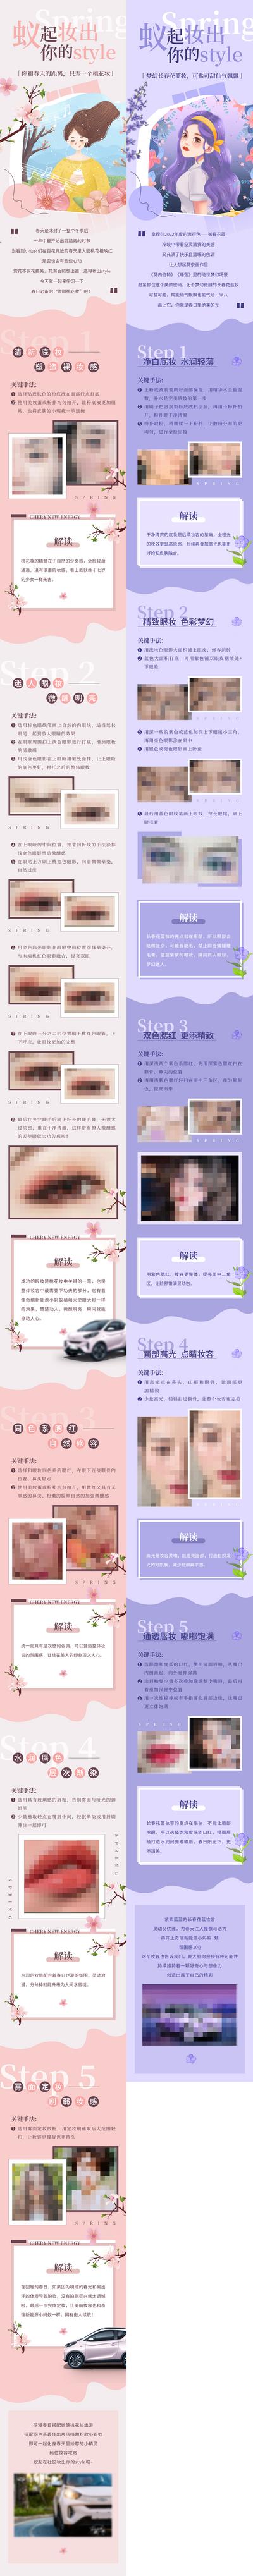 【南门网】广告 海报 长图 美妆 化妆品 专题 推文